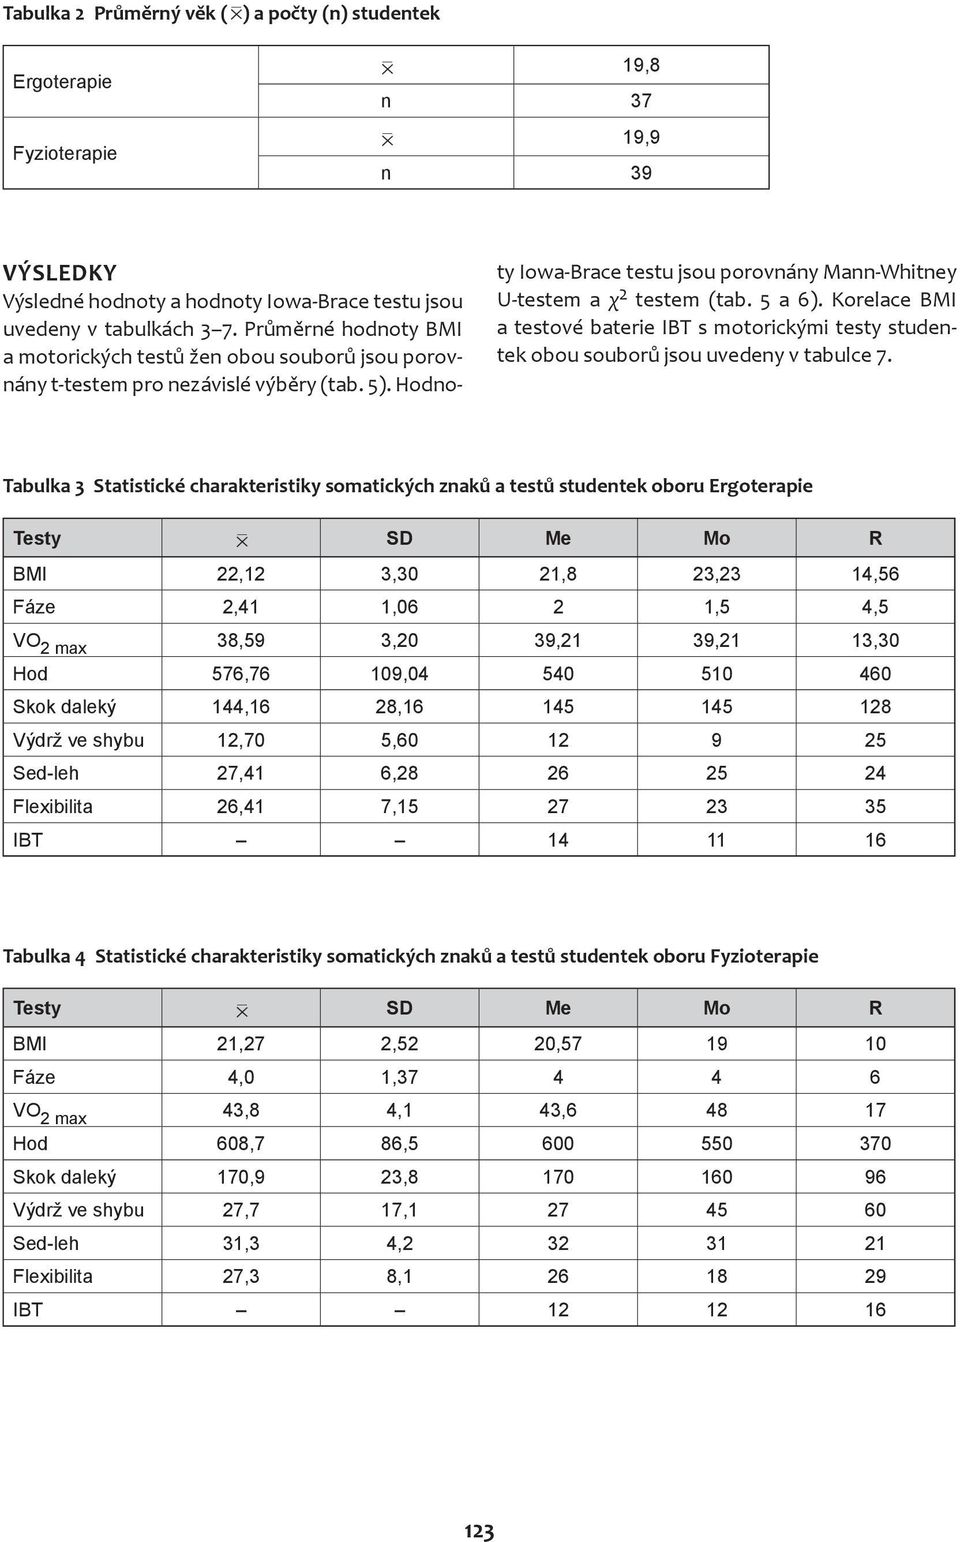 5 a 6). Korelace BMI a testové baterie IBT s motorickými testy studentek obou souborů jsou uvedeny v tabulce 7.